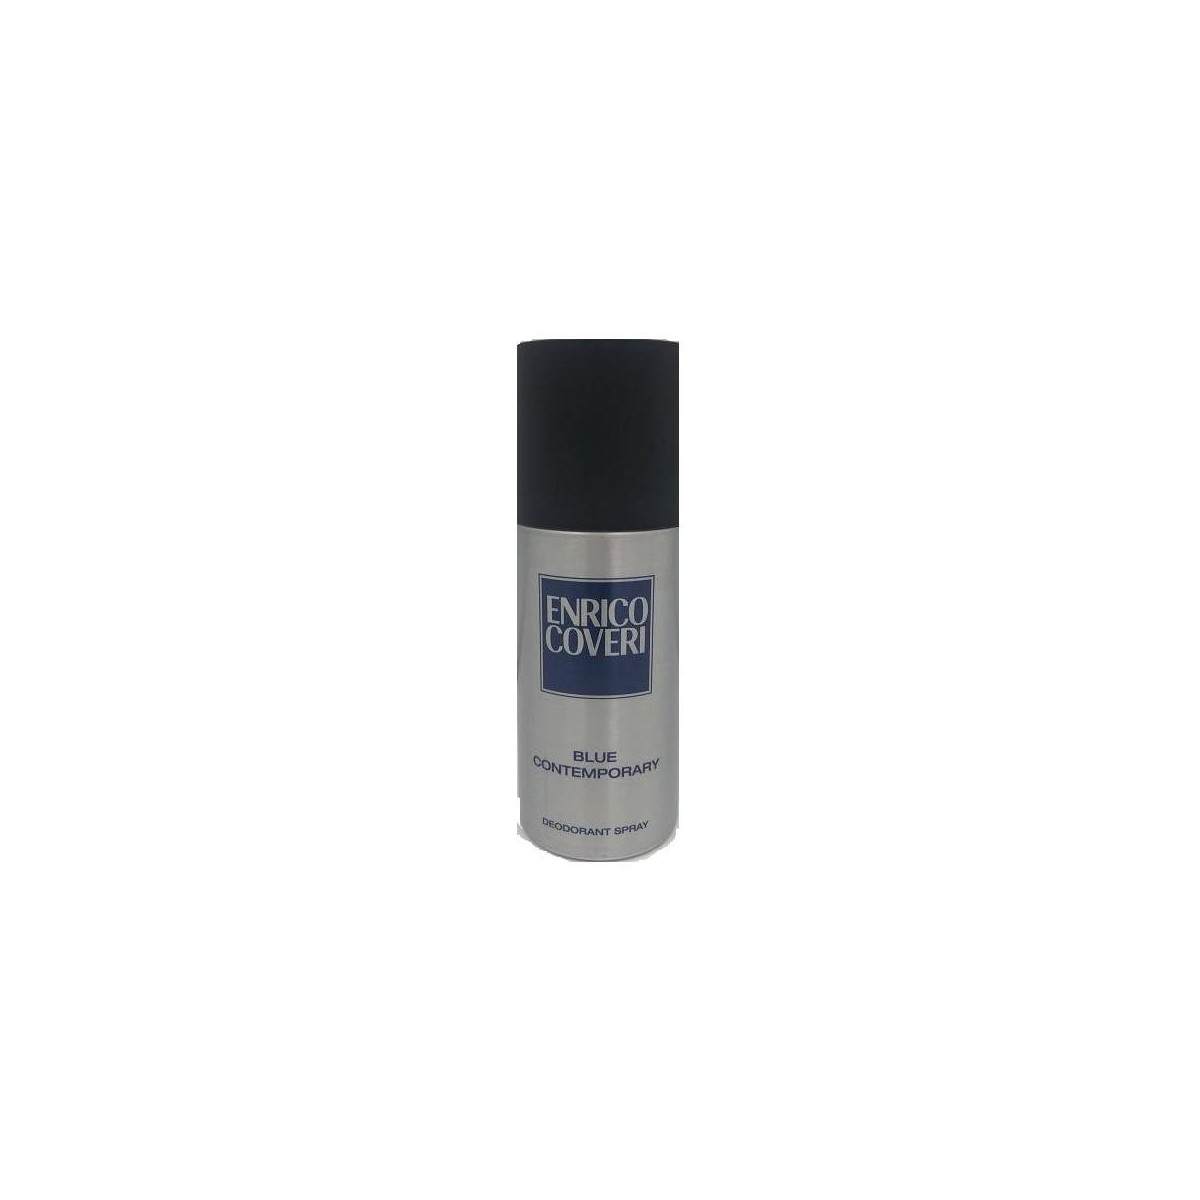 Enrico Coveri Blue Contemporary Deodorante 150ml spray